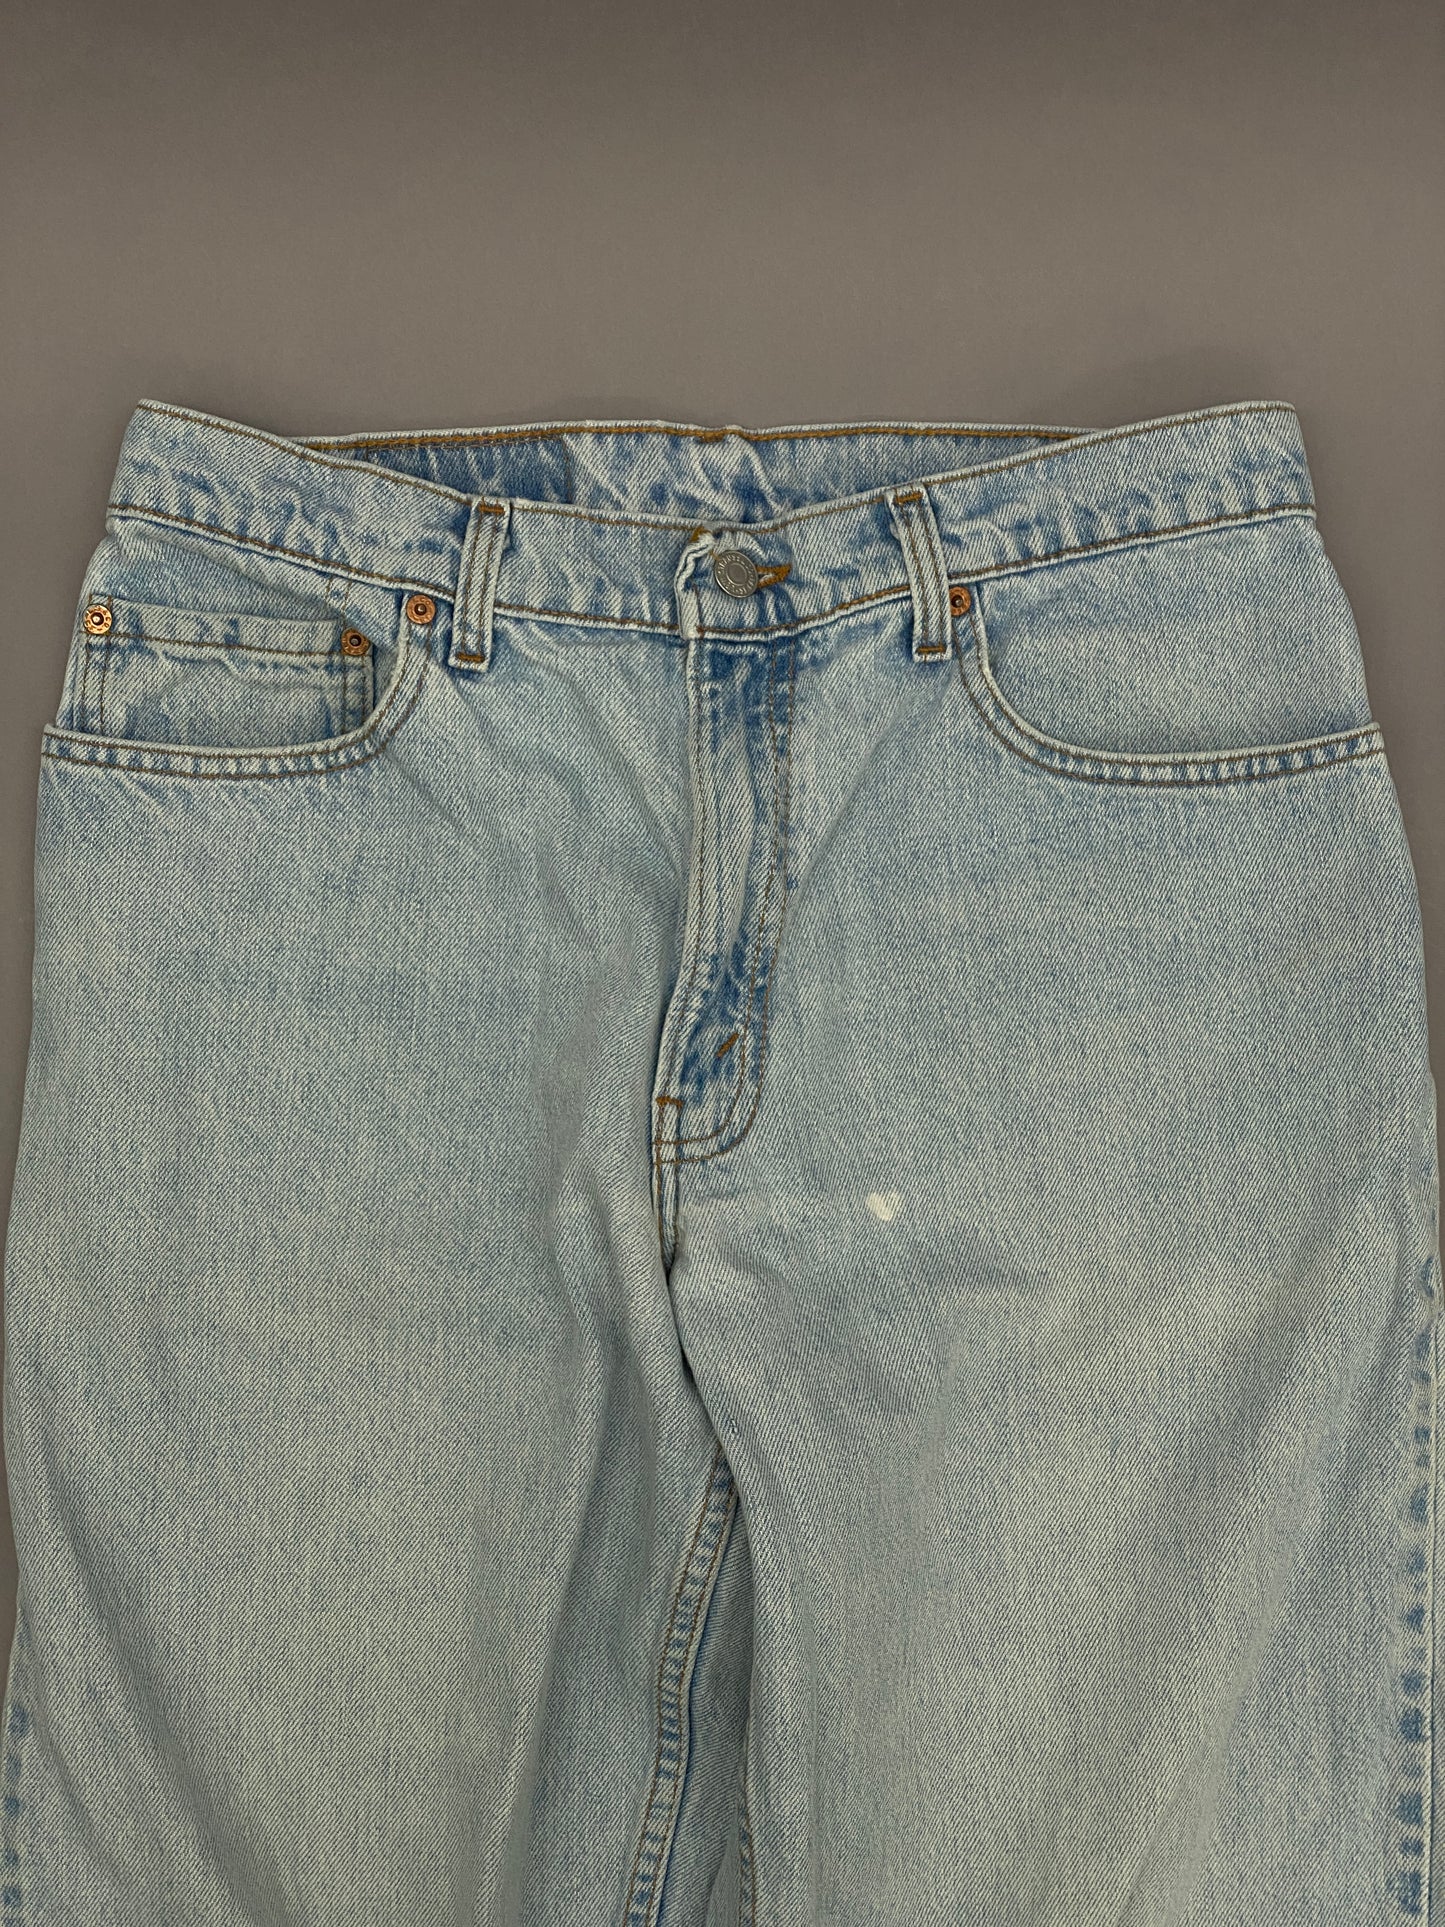 Levis 560 Vintage Blue Jeans - 32x32